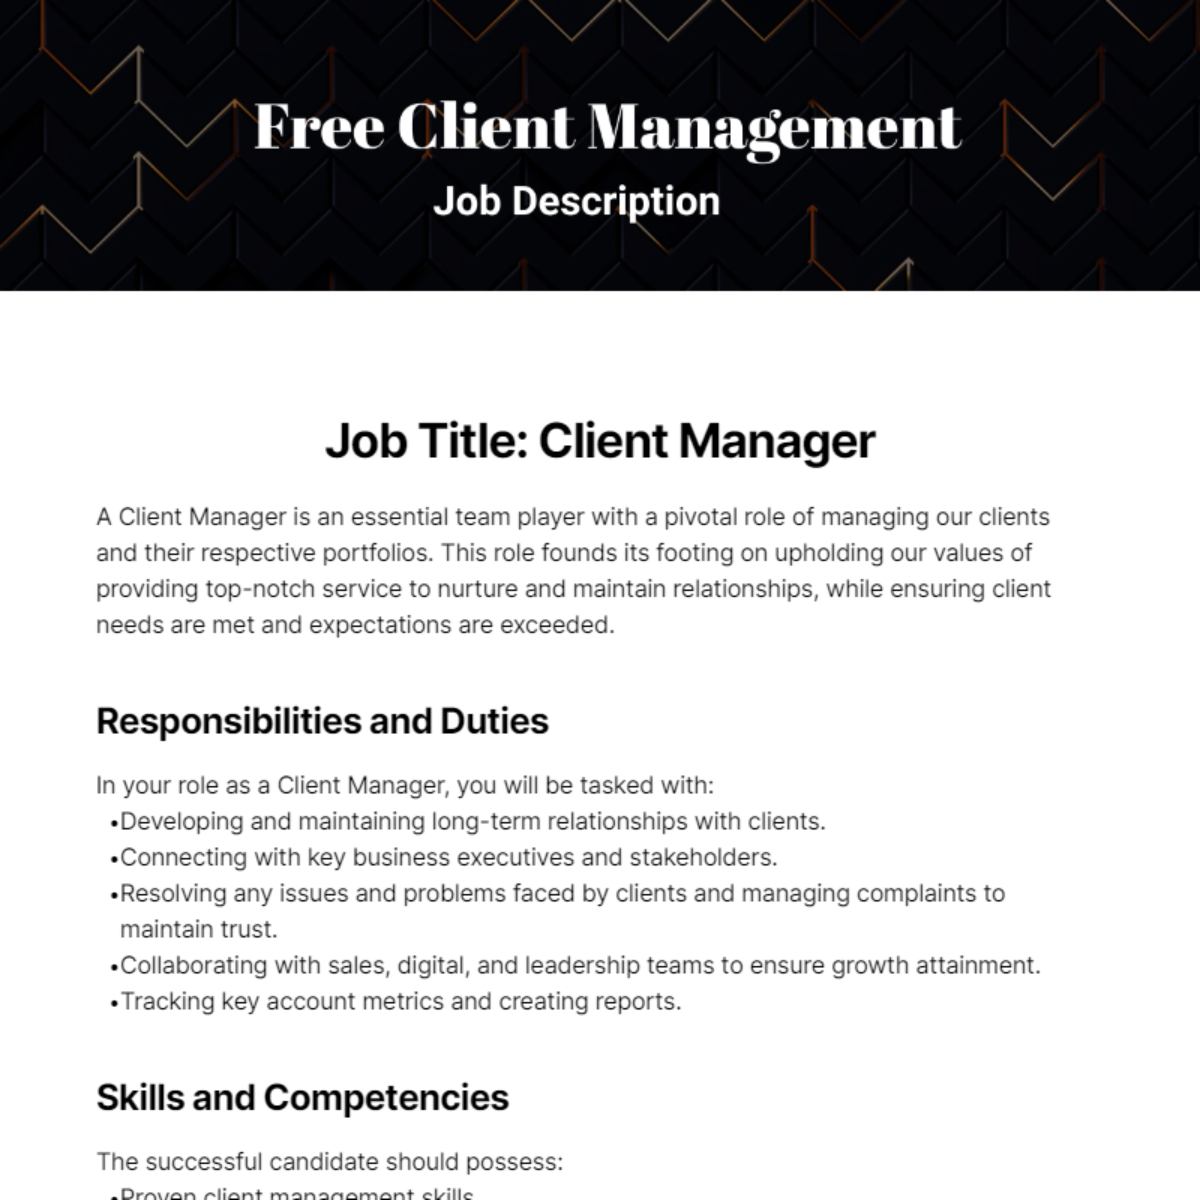 Free Client Management Job Description Template